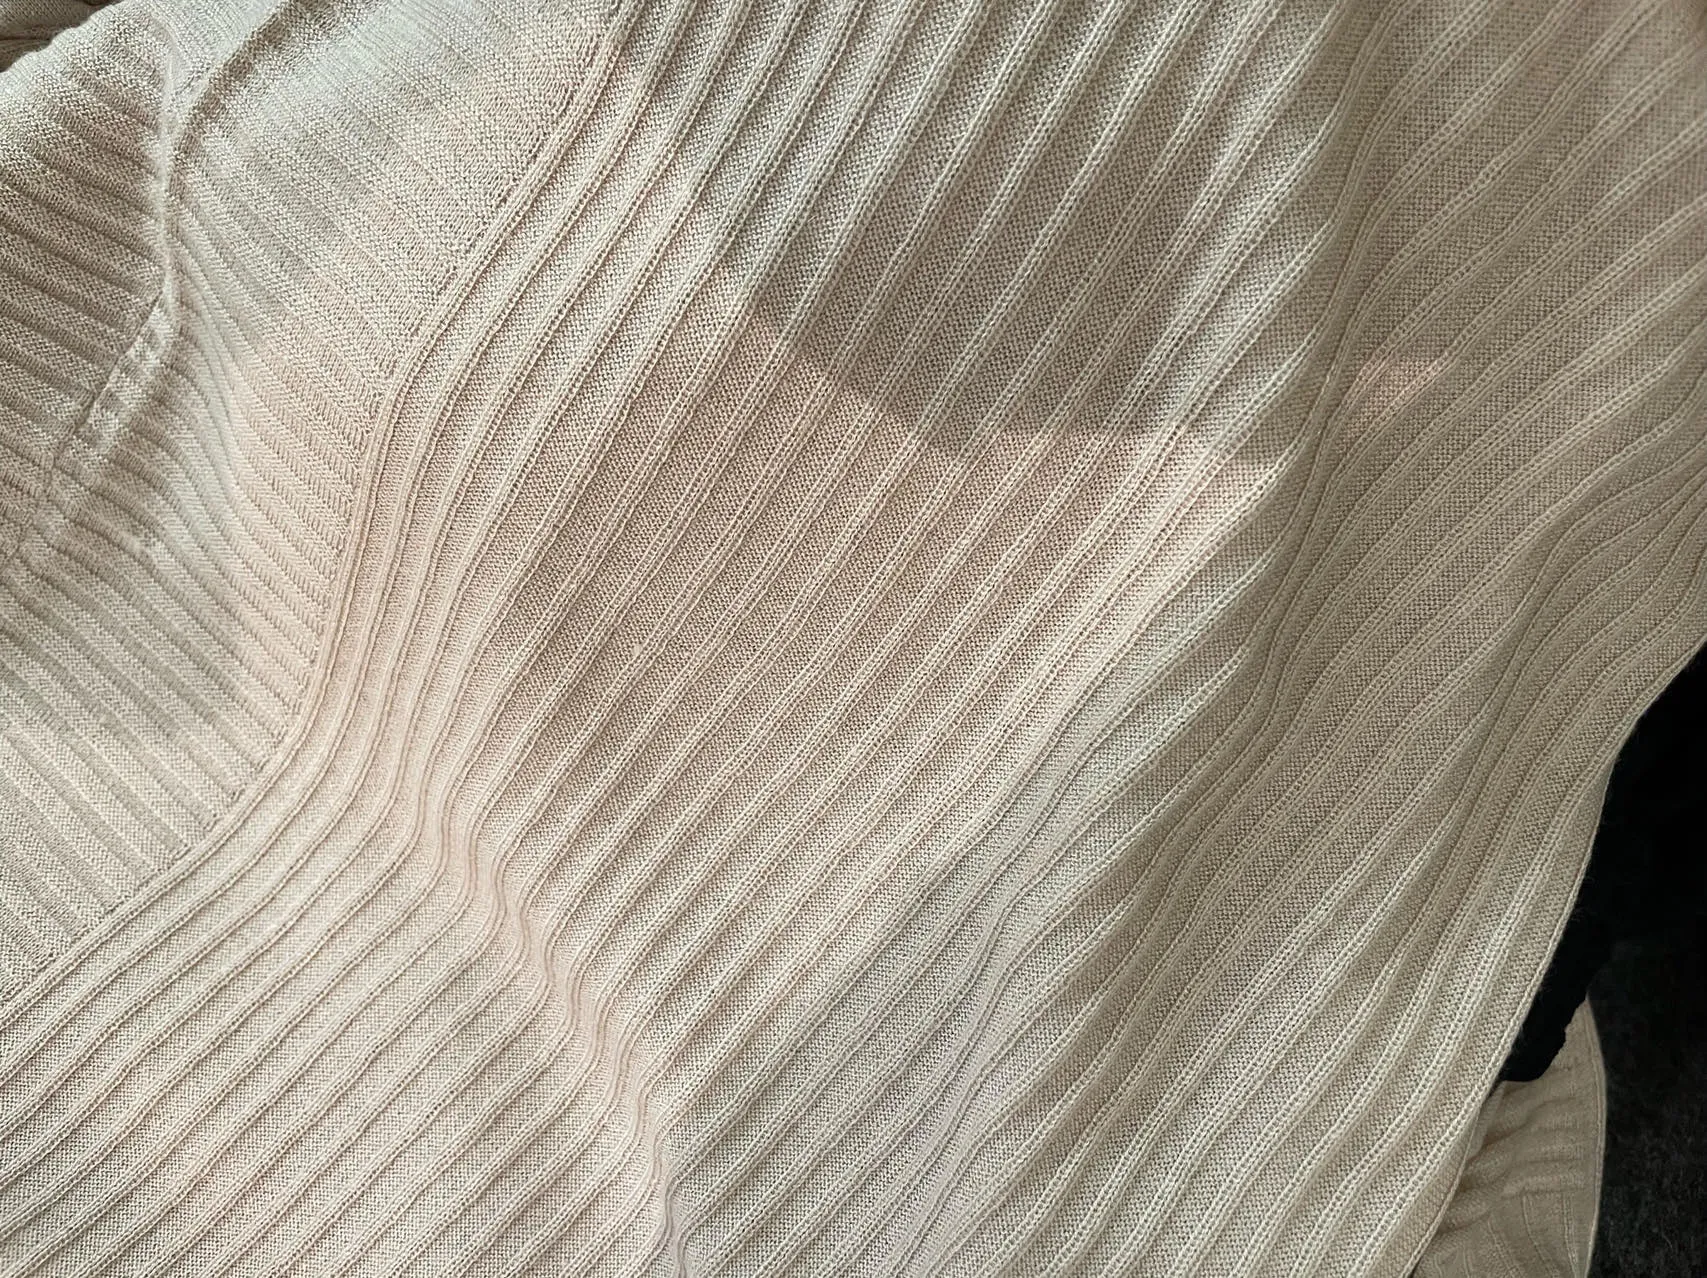 Maglioni femminili autunno n.peal seta cashmere manica corta cardigan